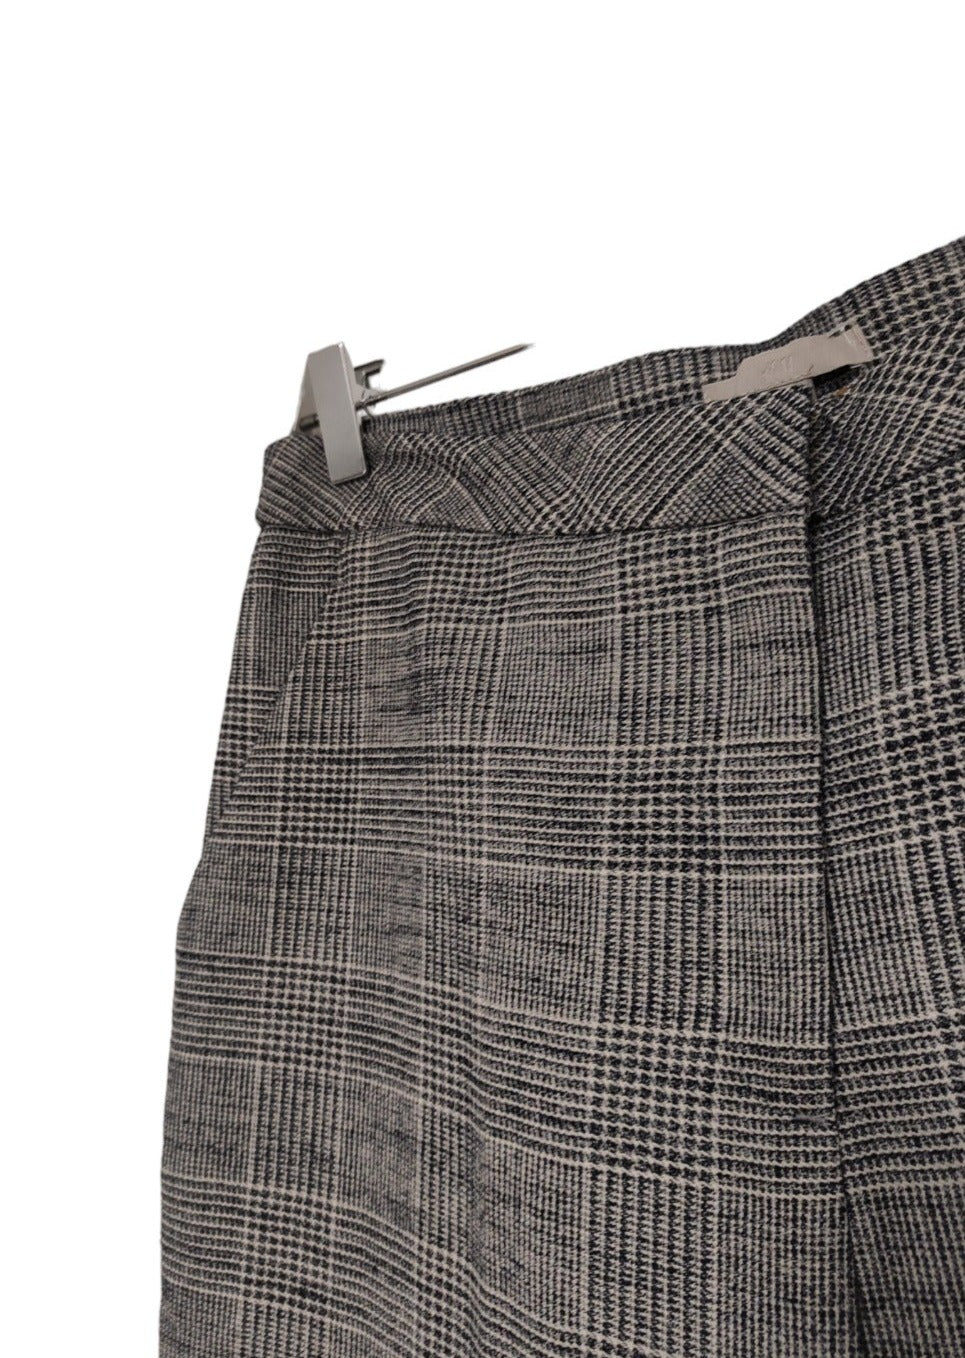 Πτι-Καρό Γυναικείο Παντελόνι H&M σε Γκρι-Μαύρο χρώμα (Large)